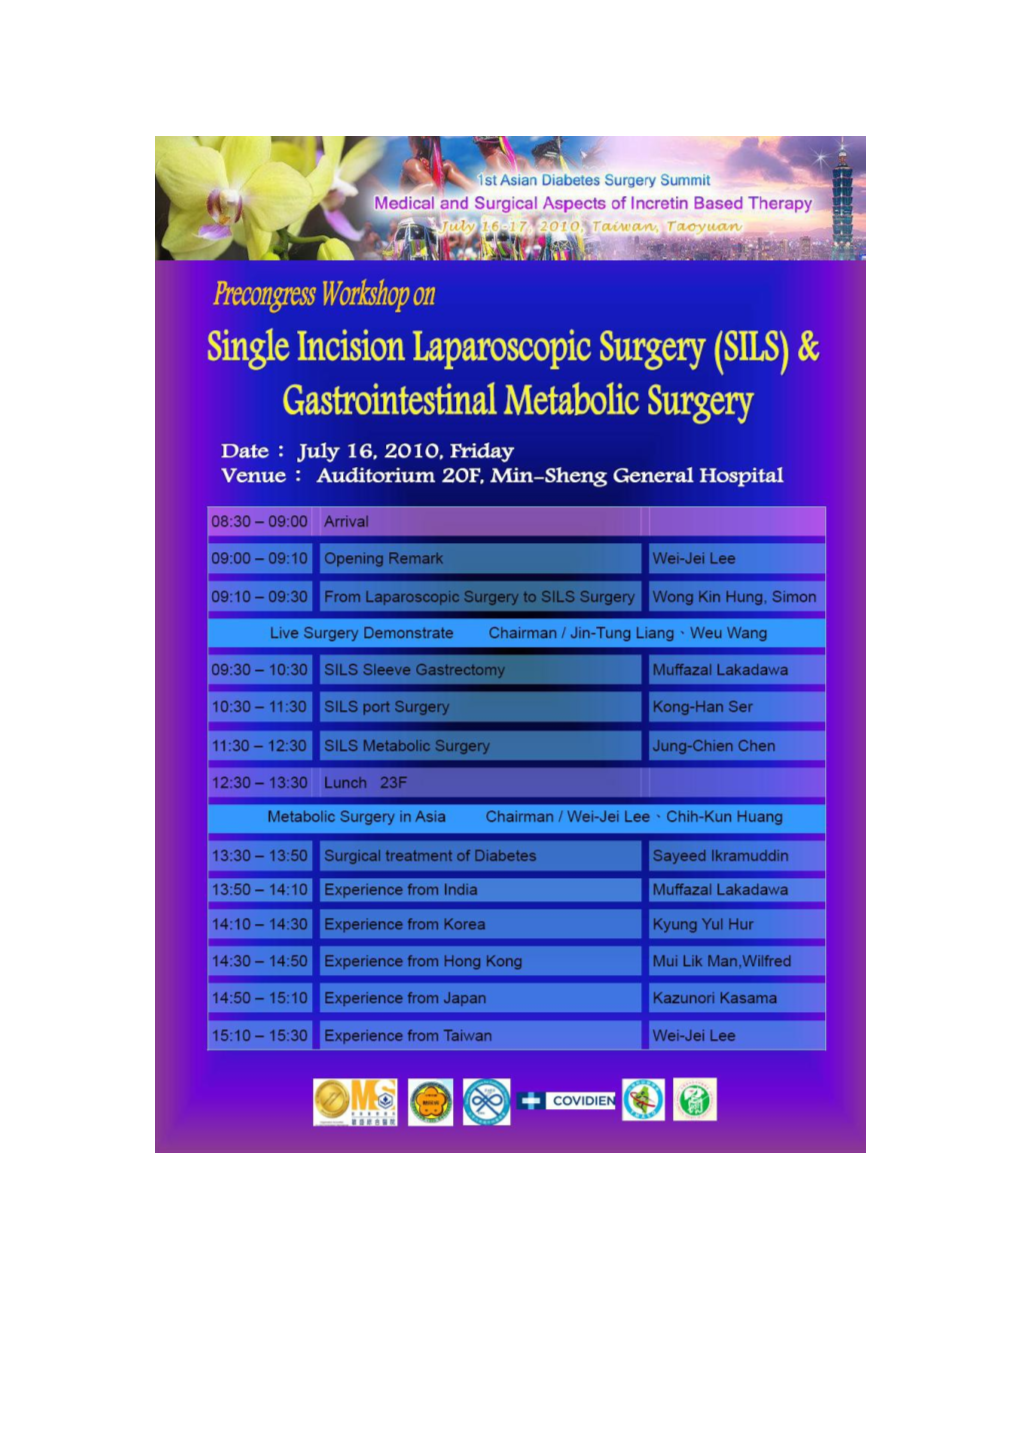 主題:From Laparoscopic Surgery to SILS Surgery